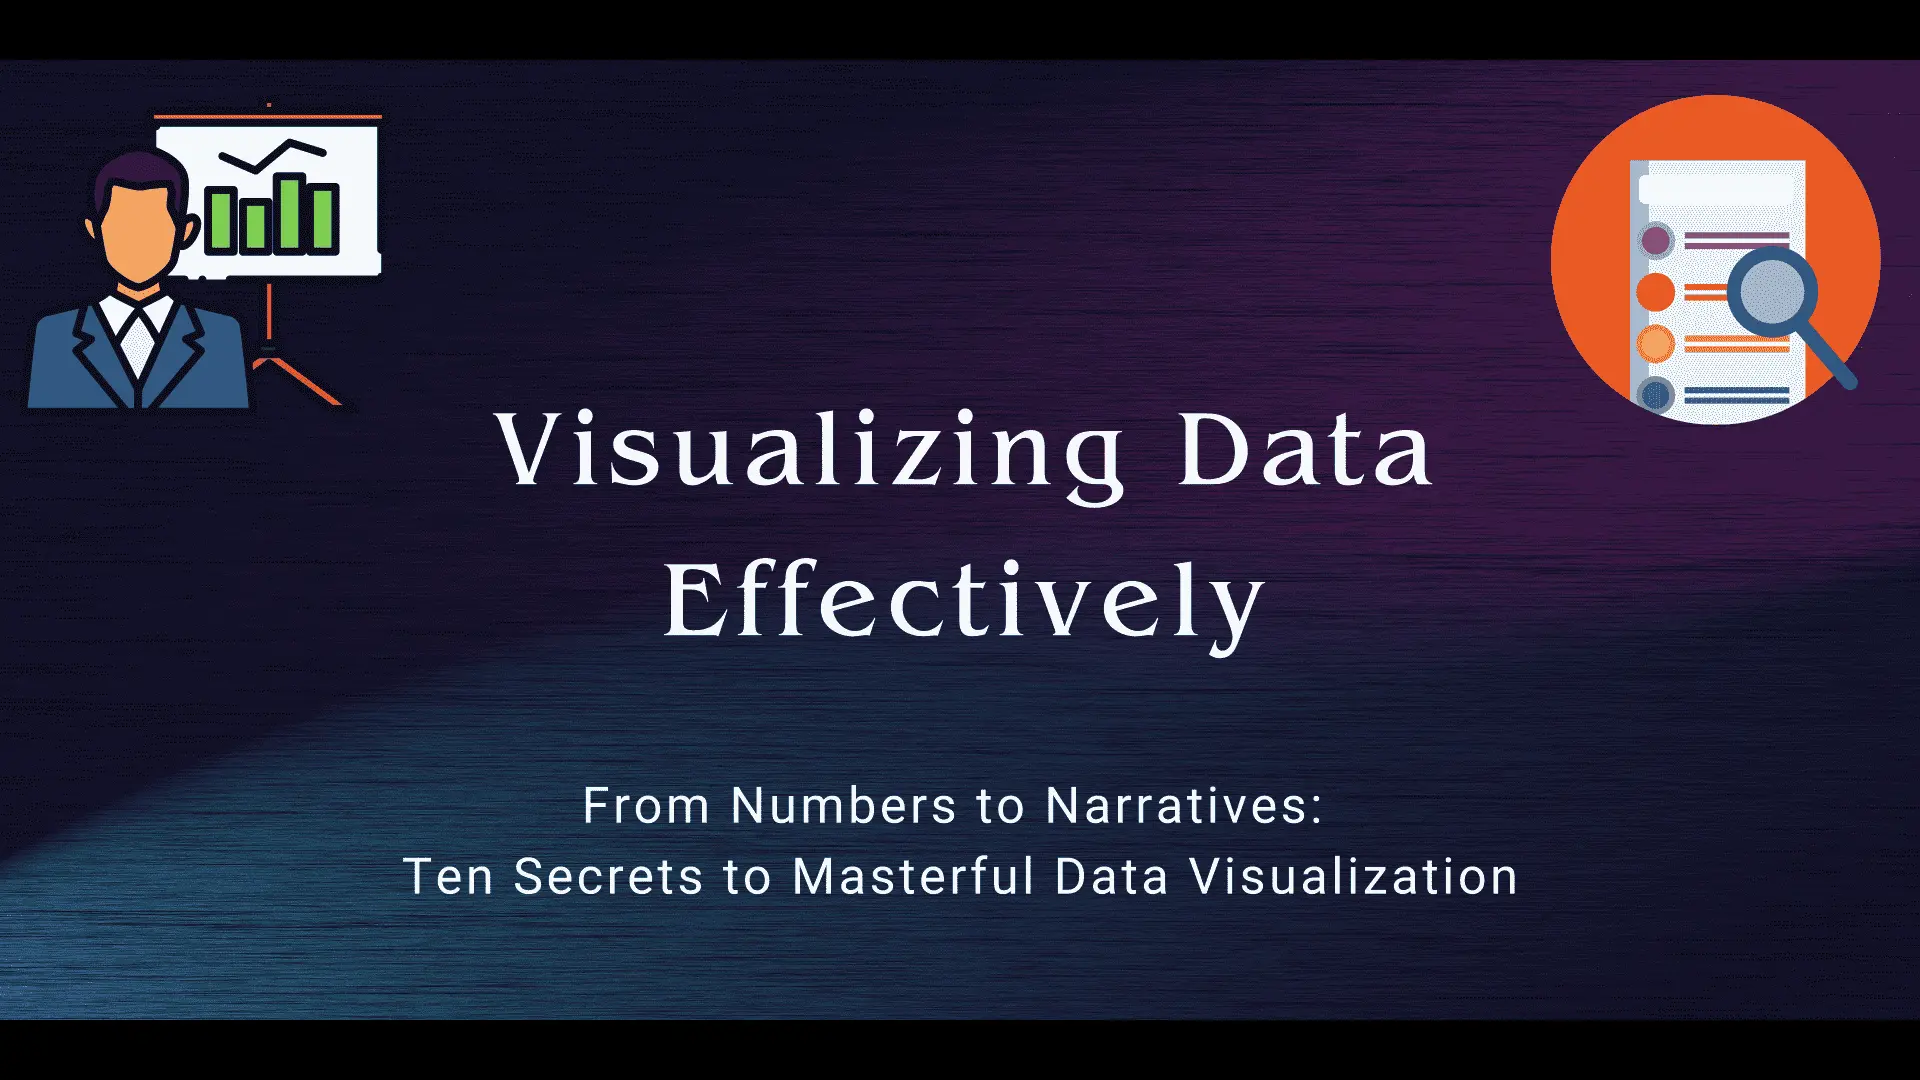 Ten Tips for Visualizing Data Effectively